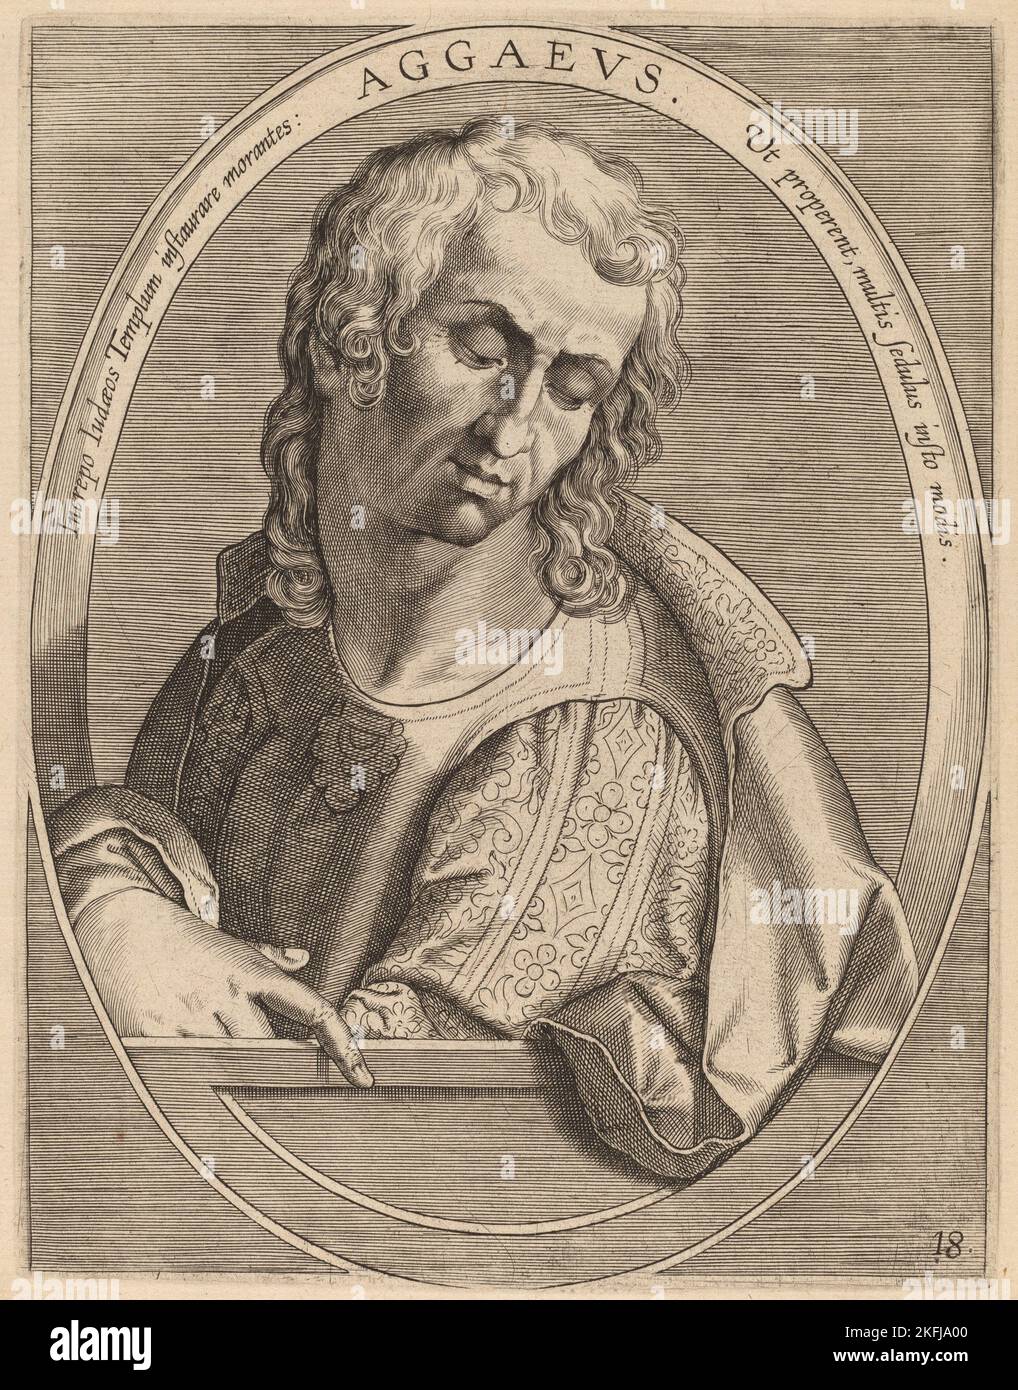 Aggaeus, published 1613. Stock Photo